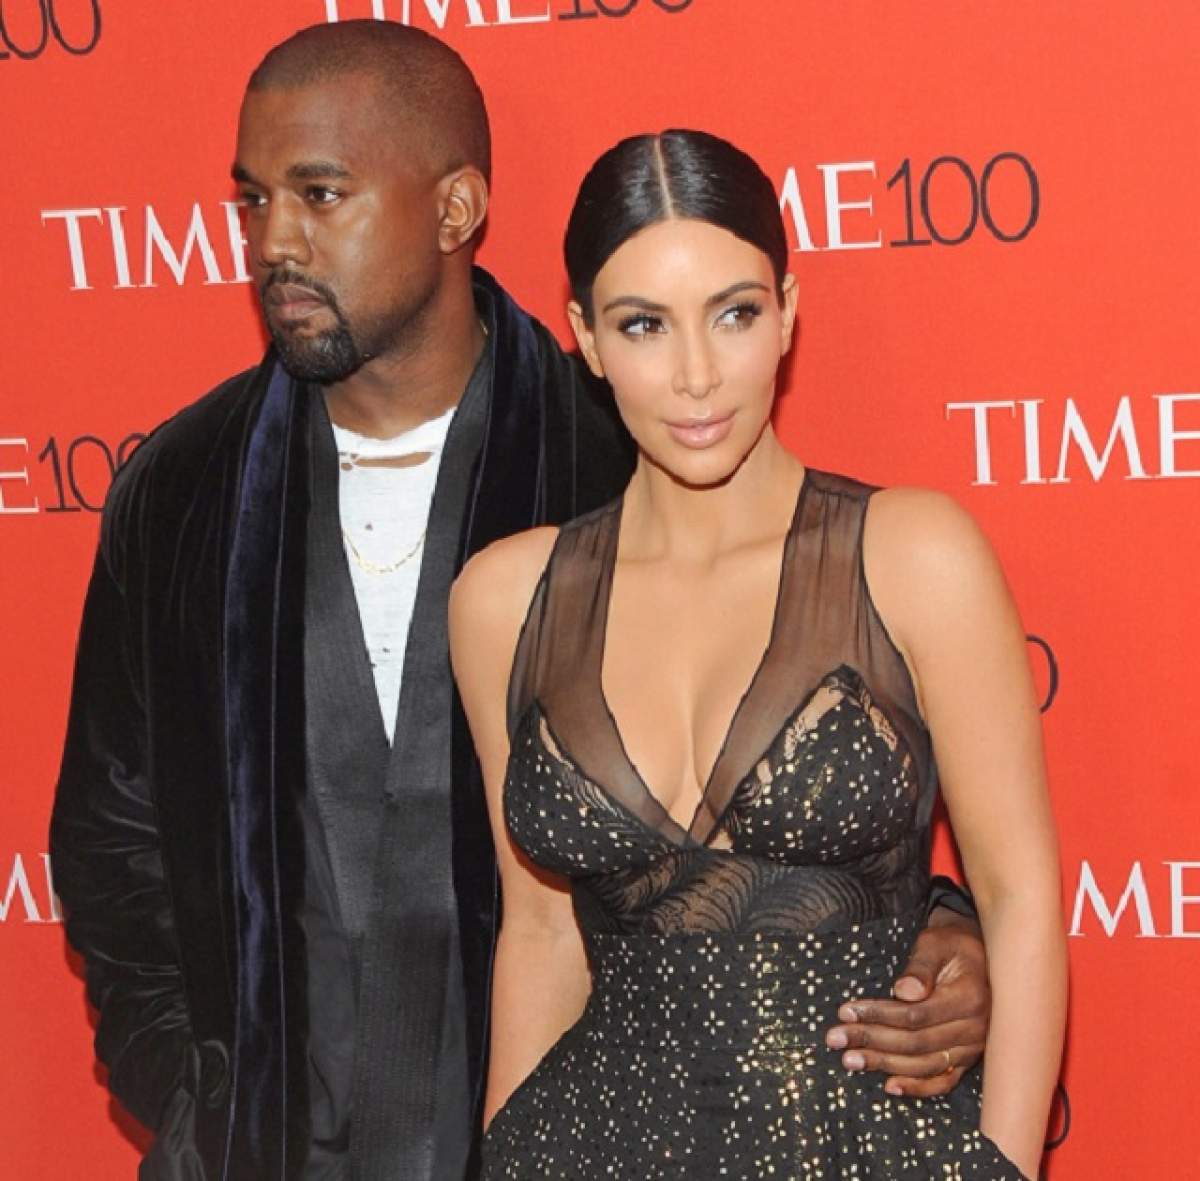 FOTO / Moment penibil pe covorul roşu! Kim Kardashian şi Kanye West au fost criticaţi dur pentru gestul lor